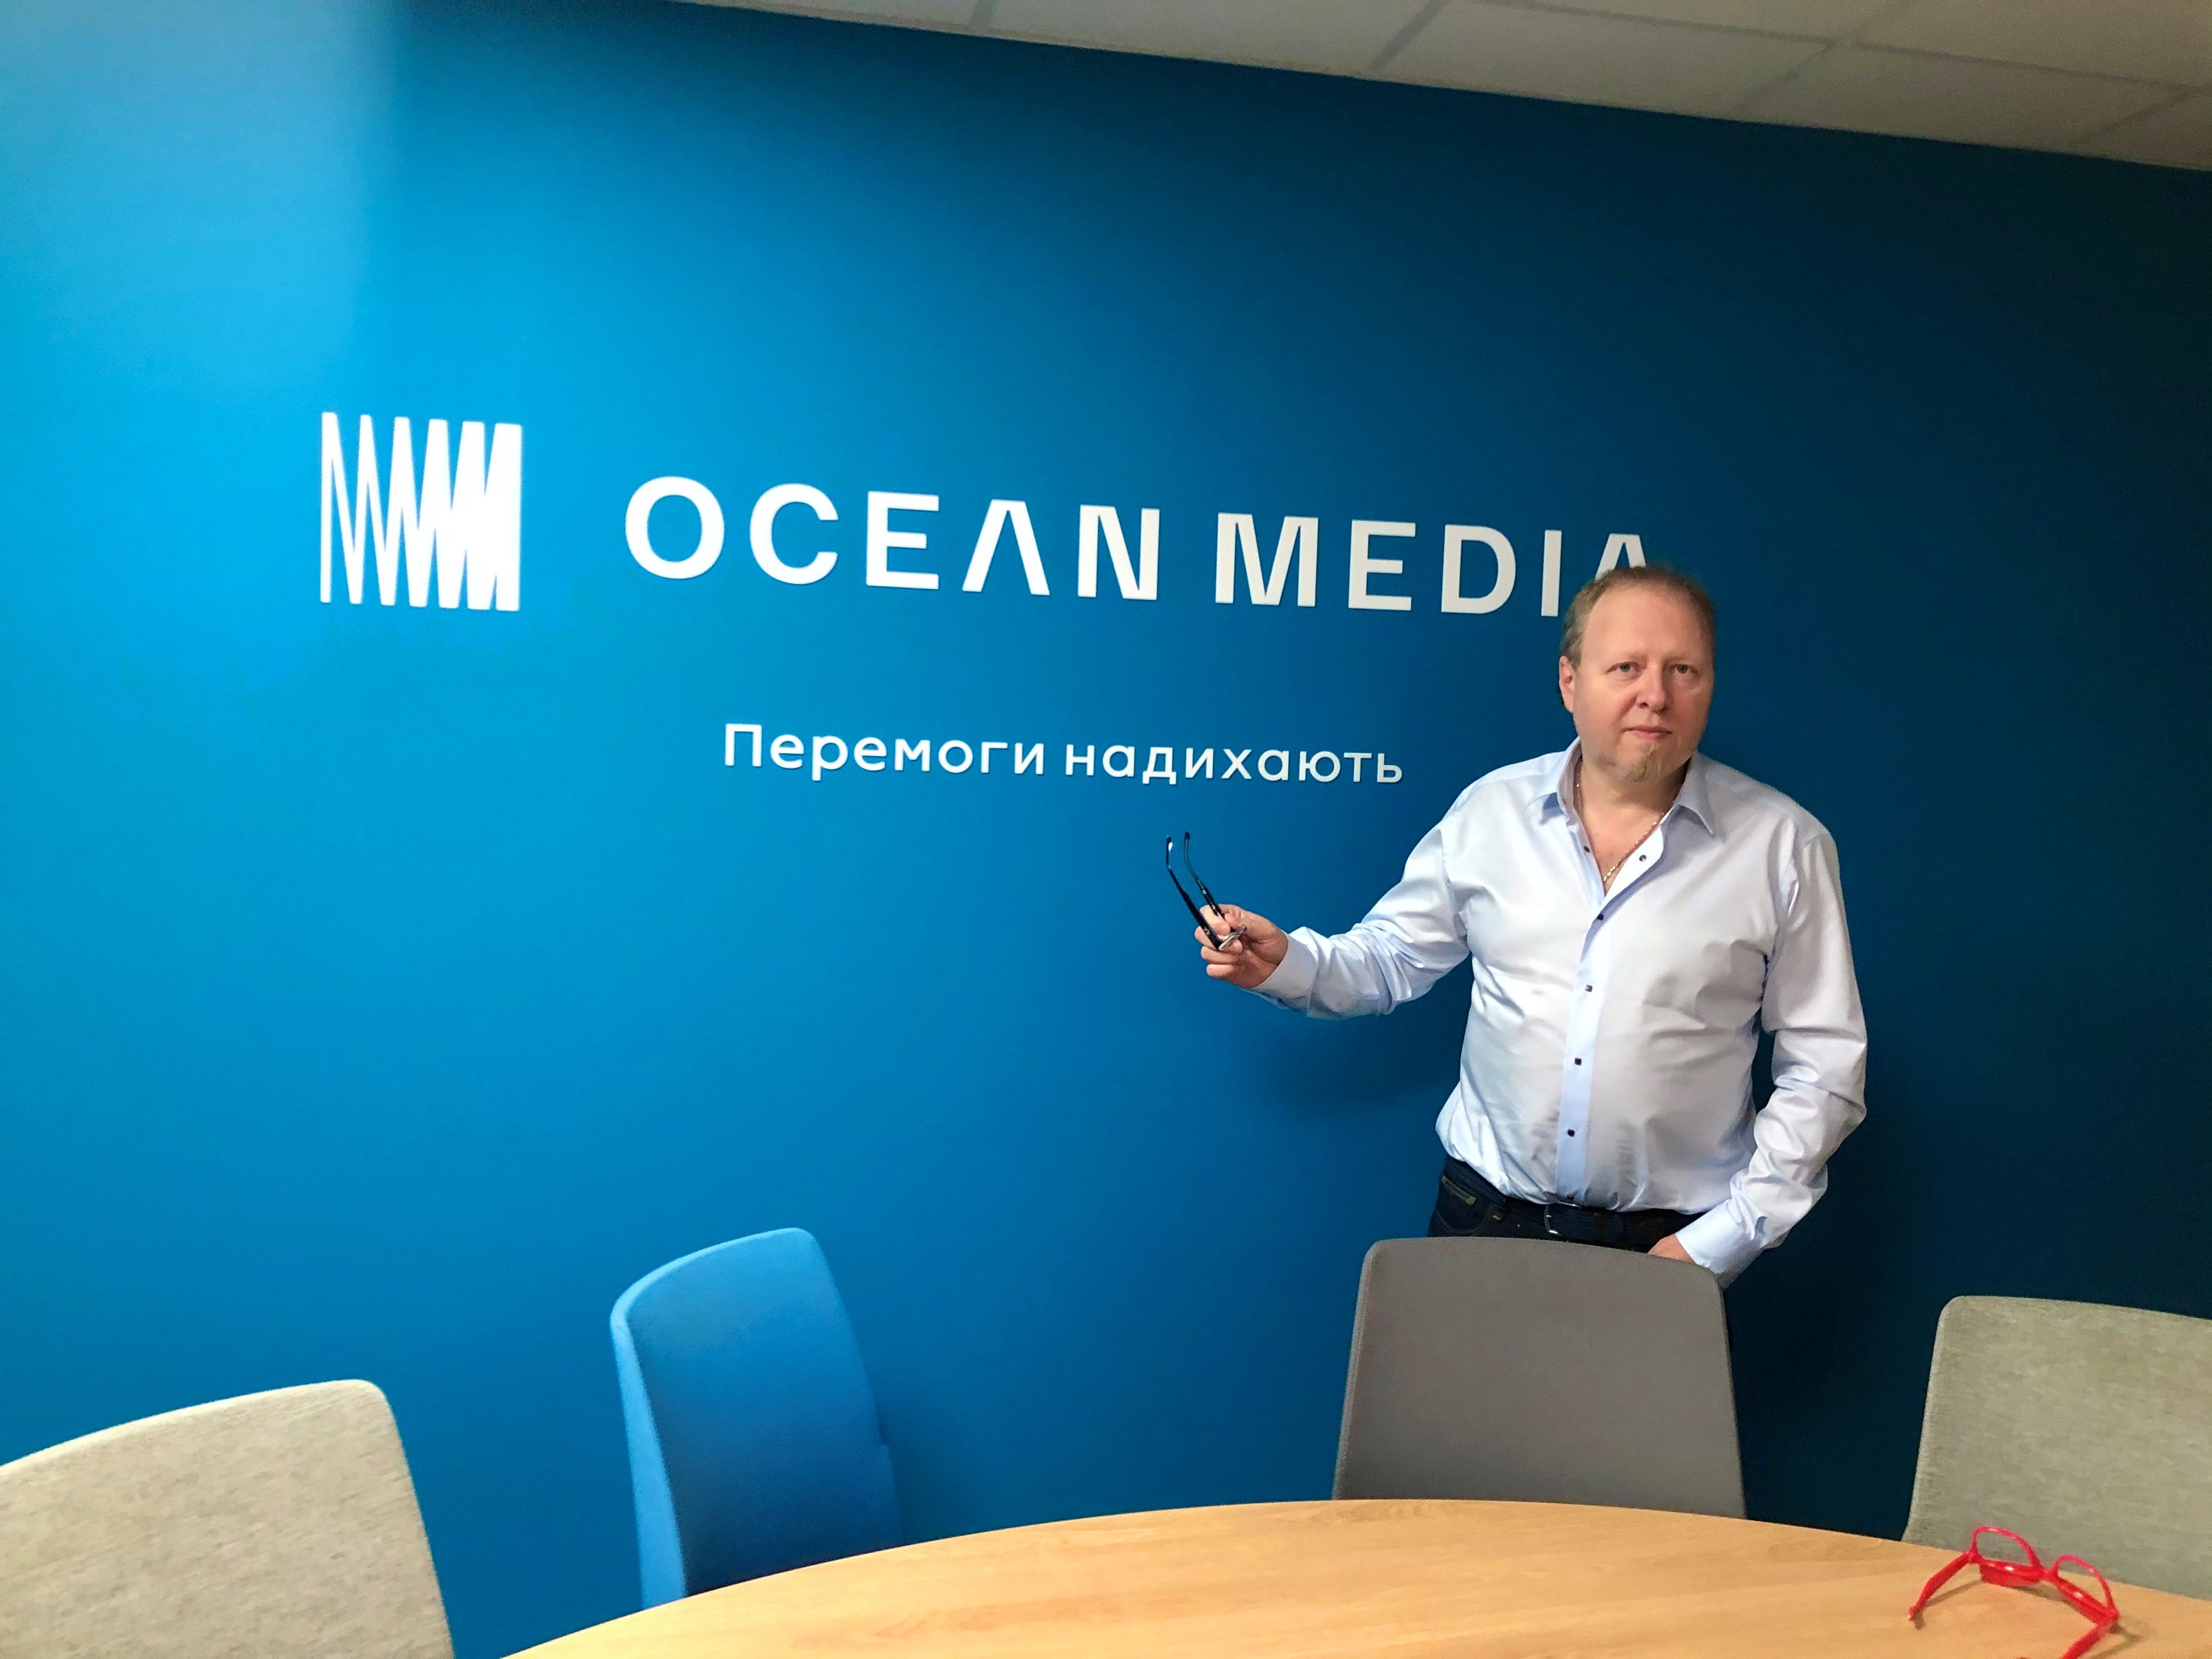 Андрій Партика, Ocean Media: Нинішня криза є однією з найм’якших для телереклами